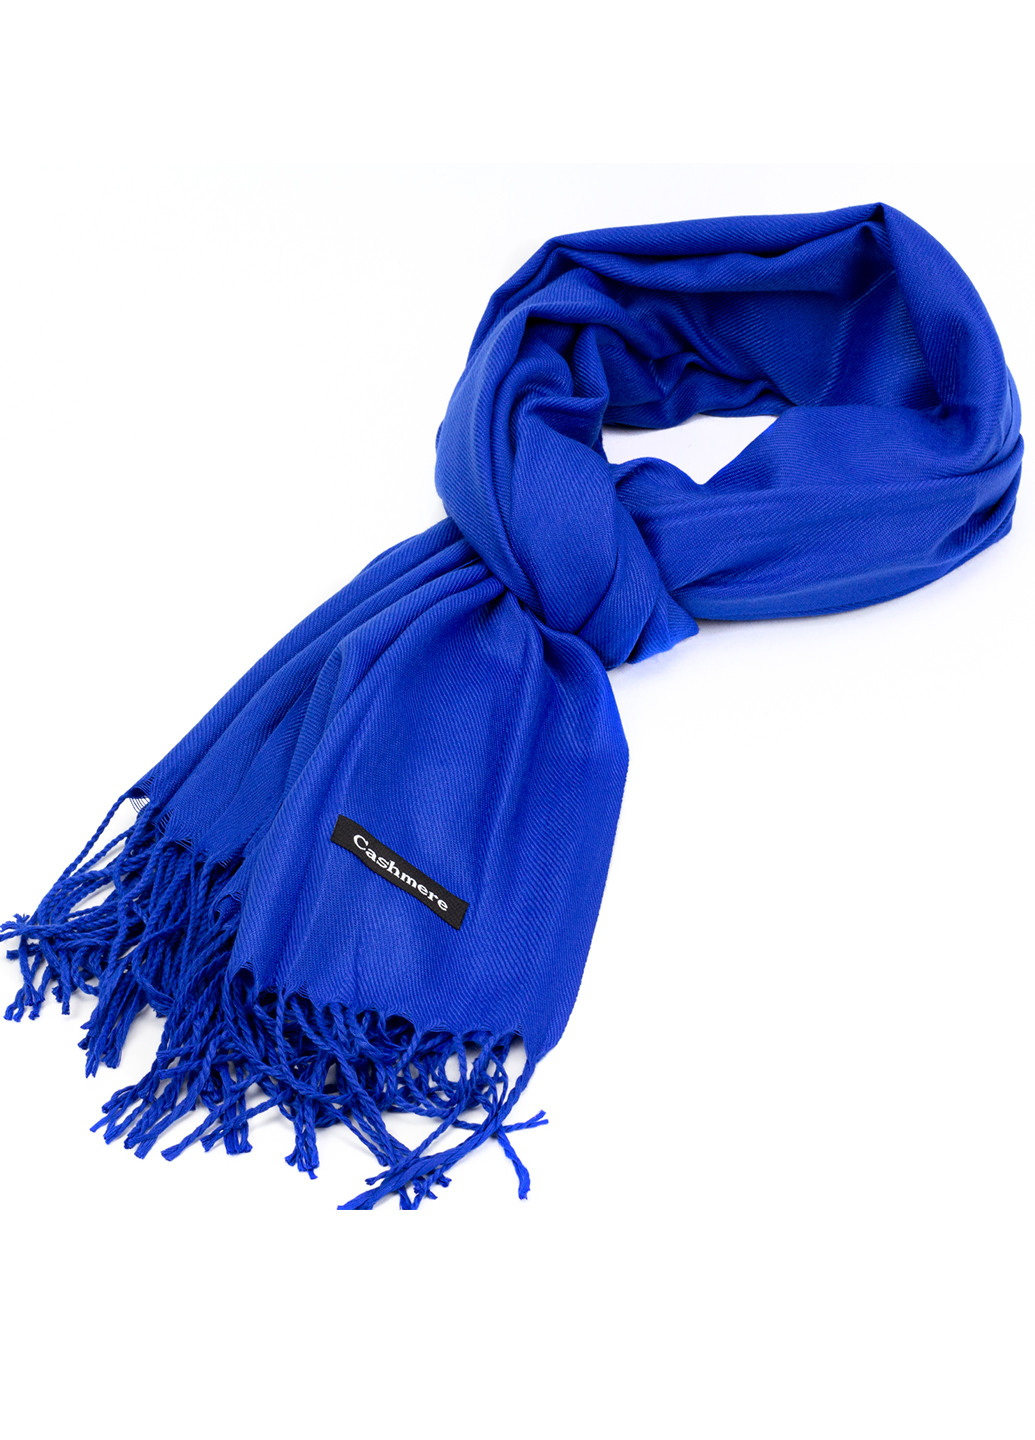 Женский кашемировый шарф, синий Cashmere S92012 однотонный синий кэжуал акрил, кашемир